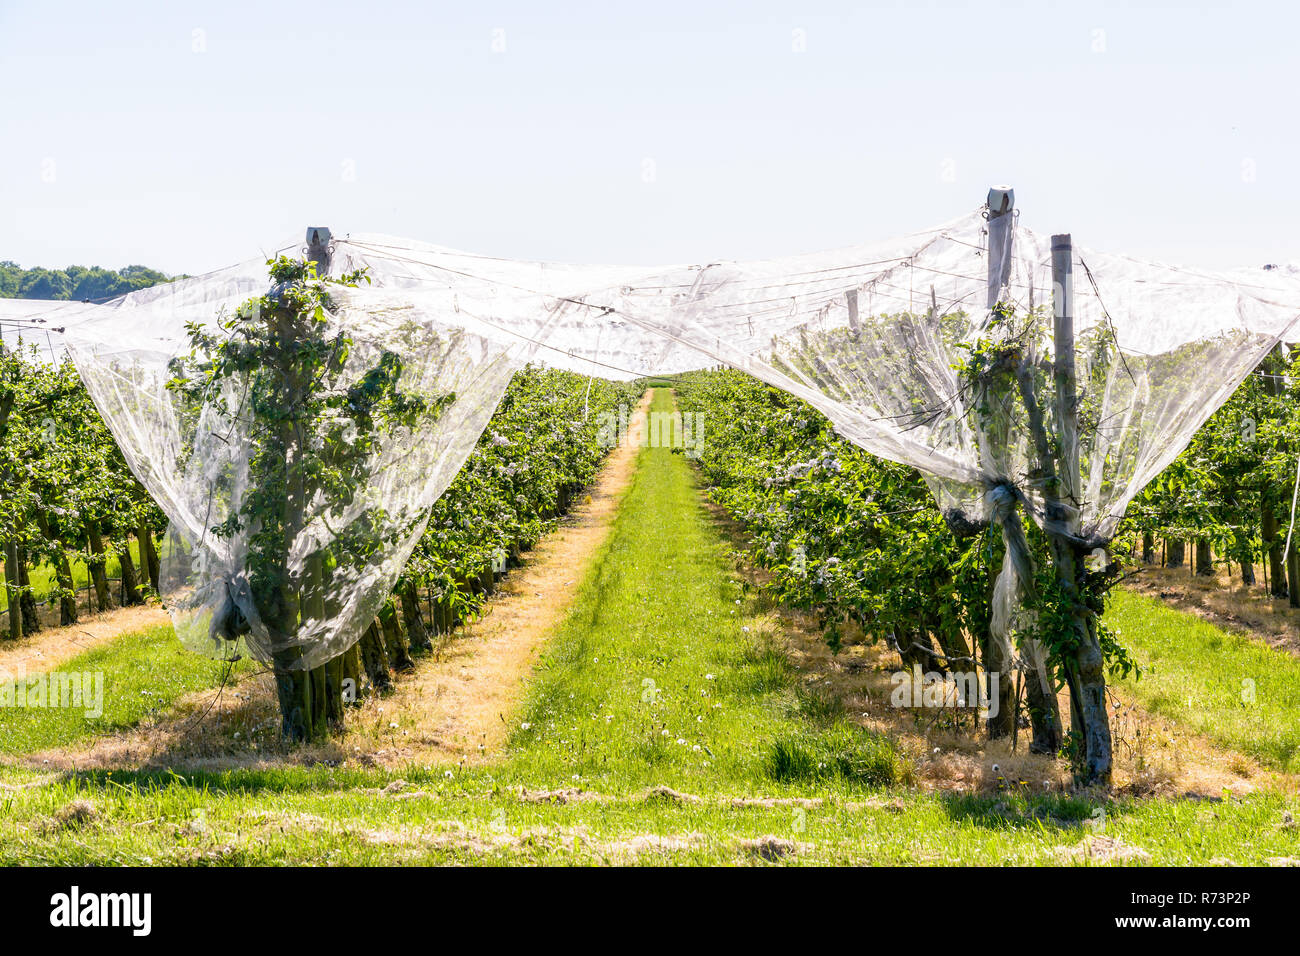 Un huerto de manzanas que las filas de árboles están protegidos contra los pájaros y granizo por una fina red blanca estirada por encima, en primavera en la campiña francesa. Foto de stock